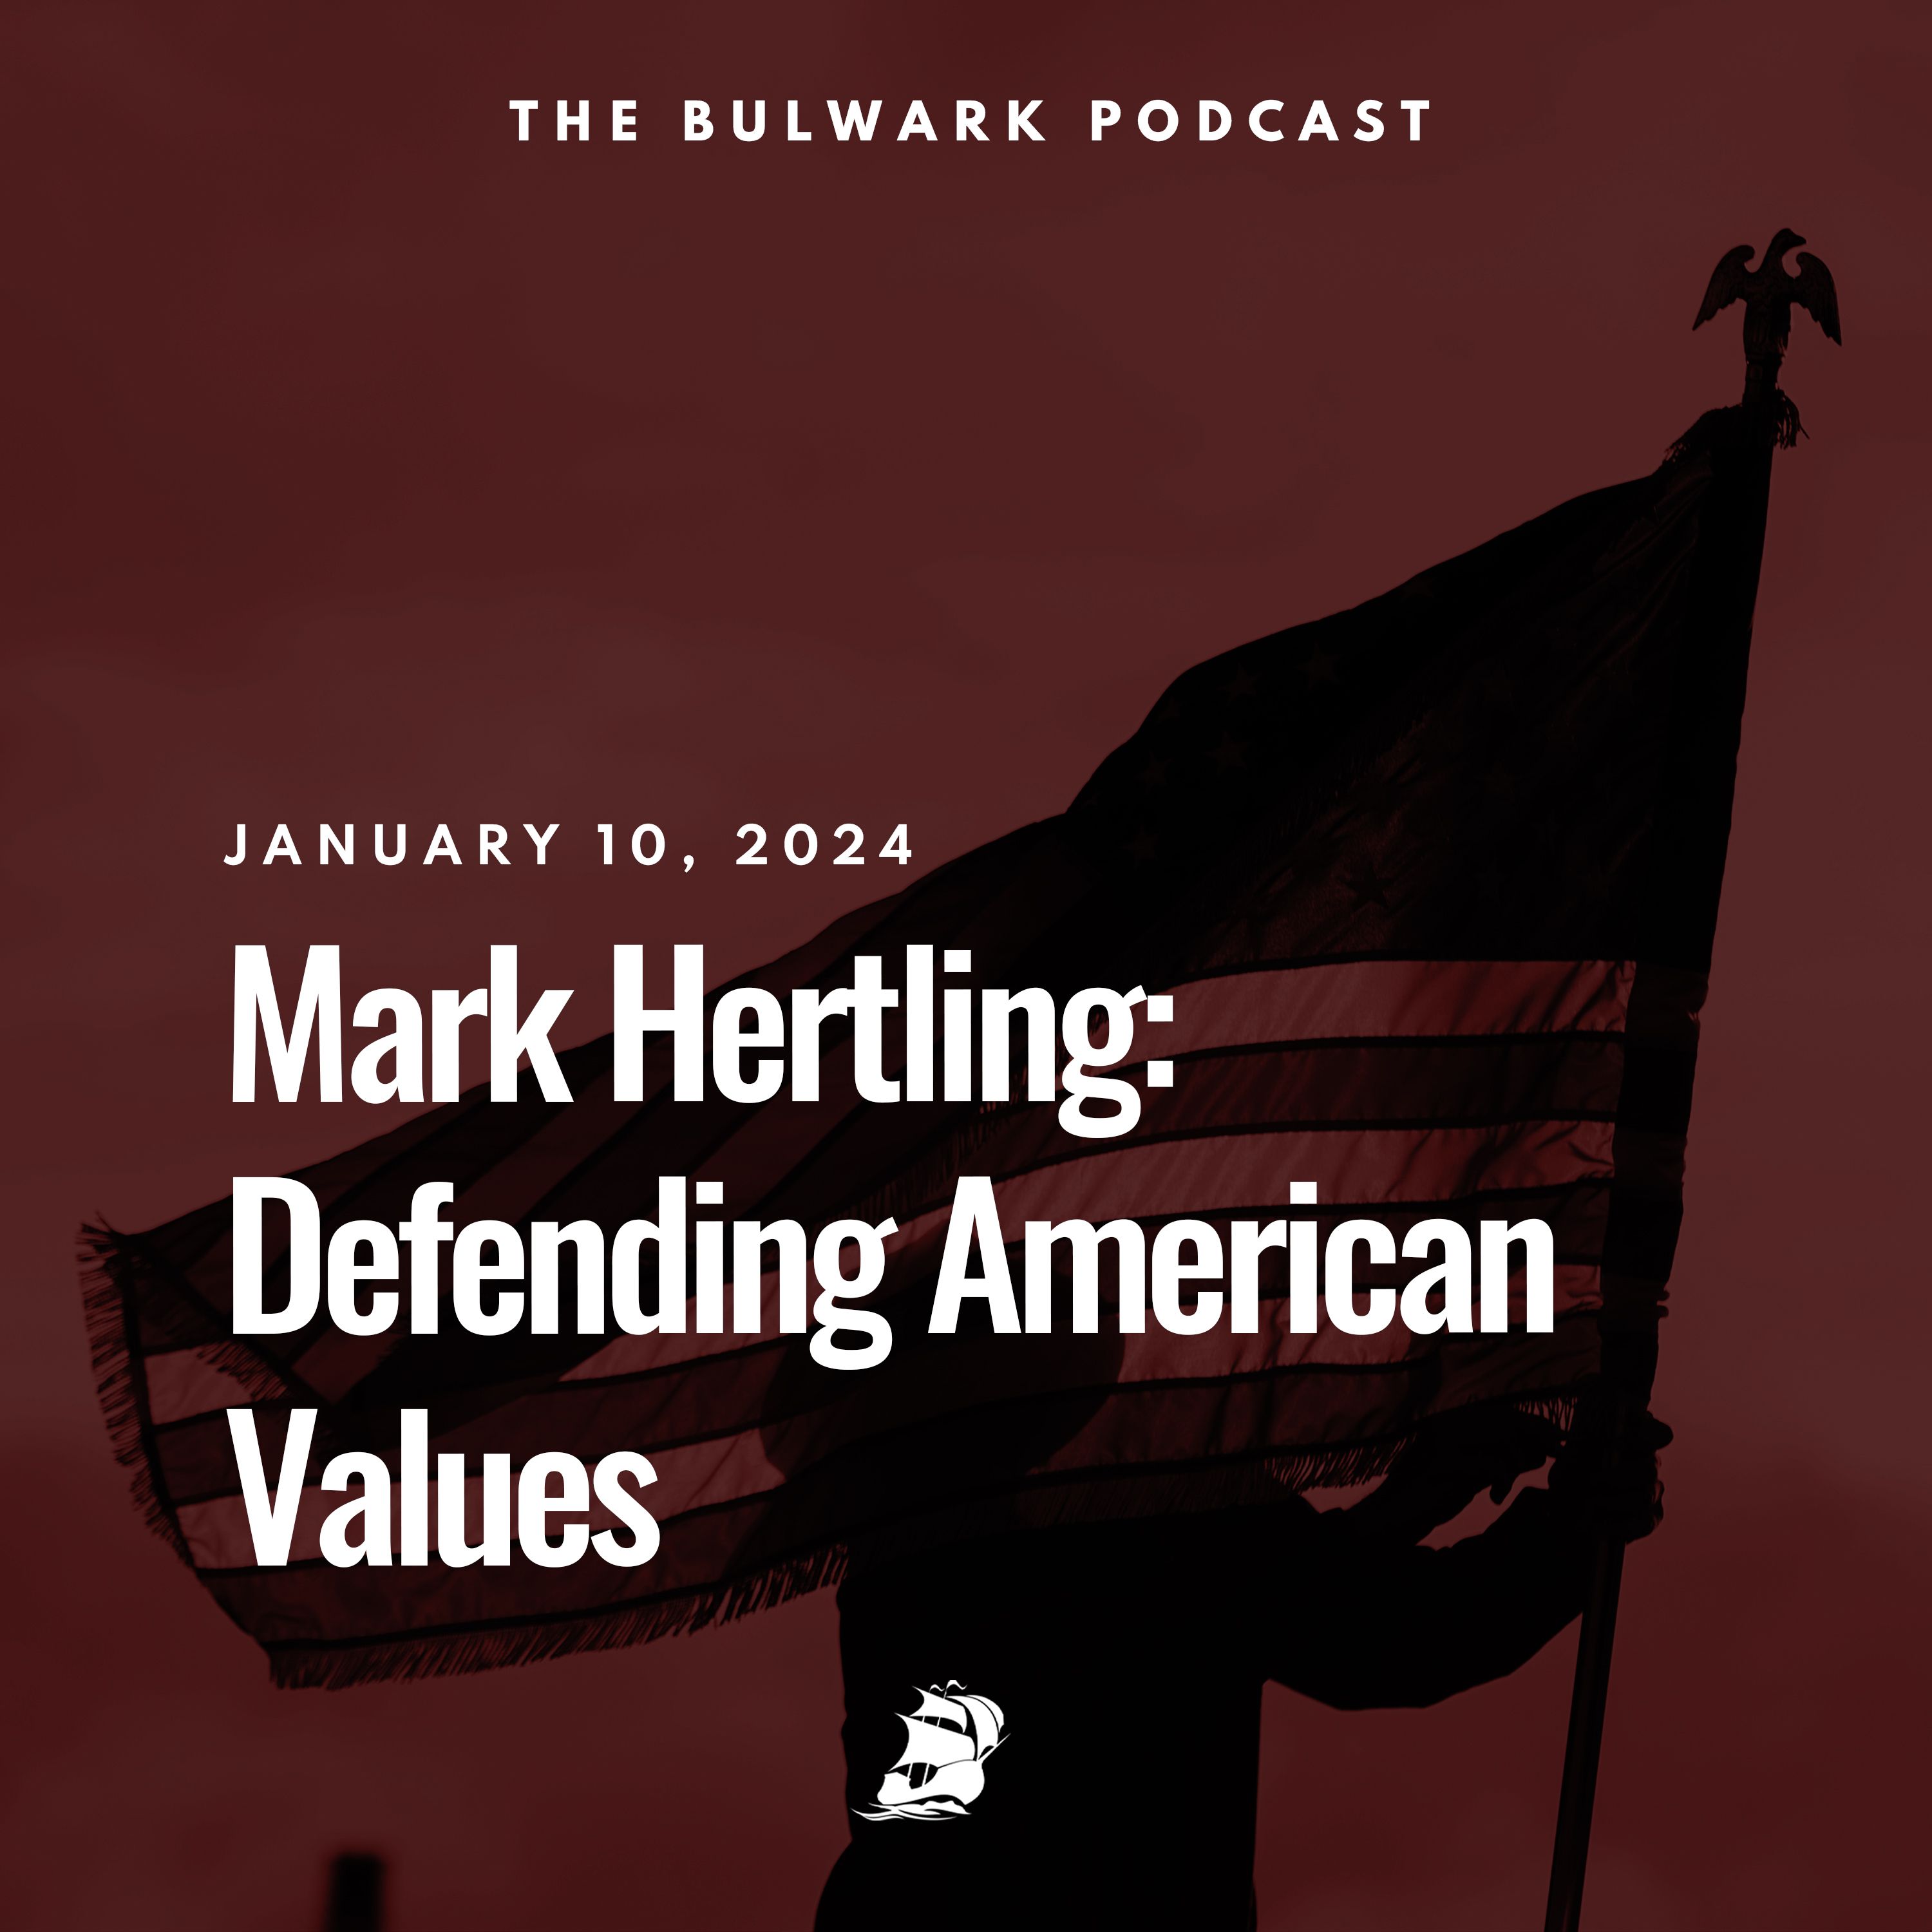 Mark Hertling: Defending American Values